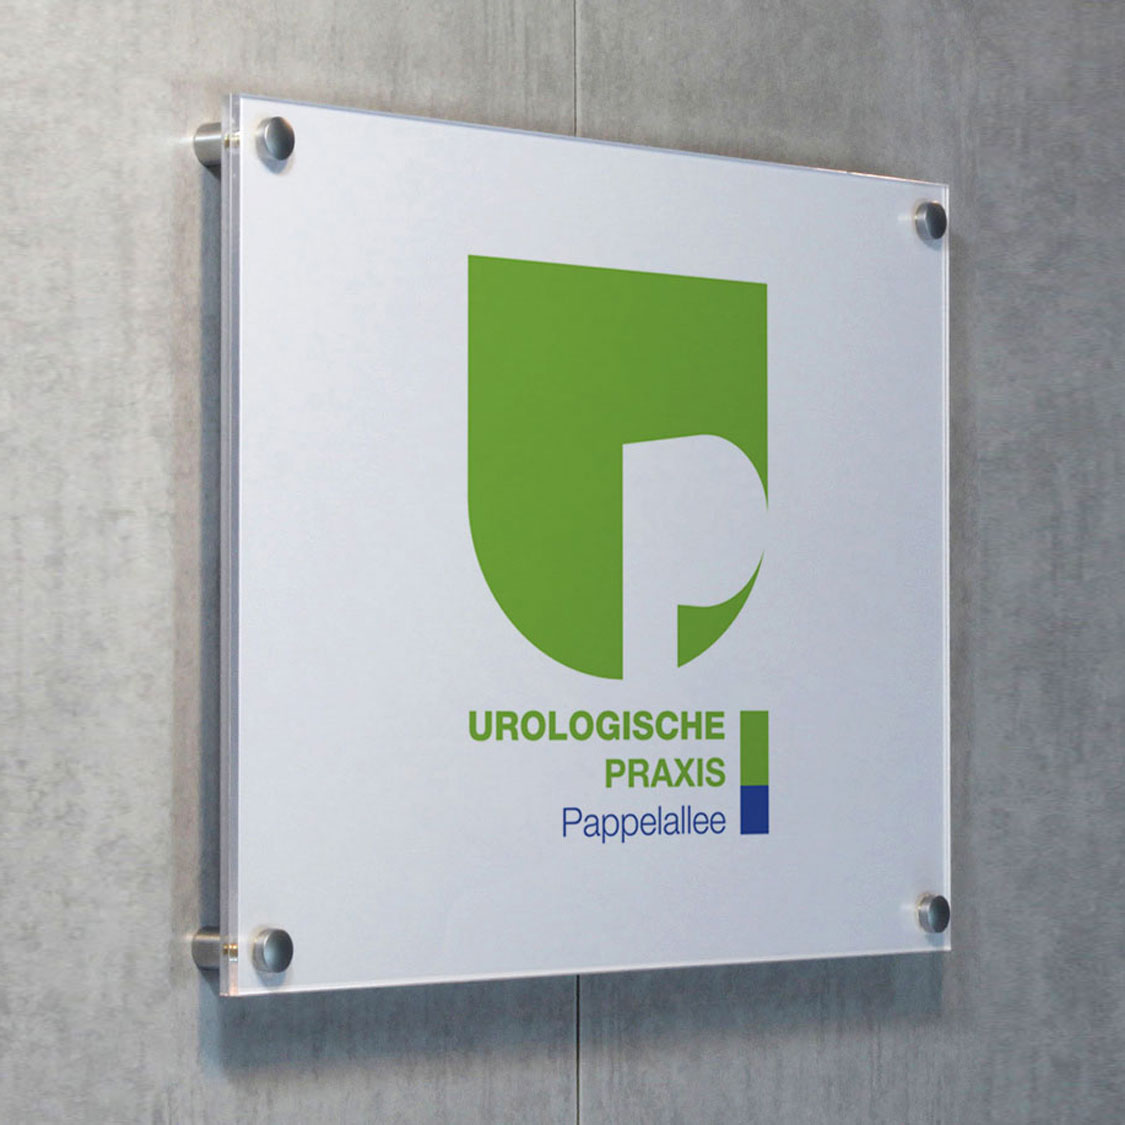 Ansicht des Praxisschildes für die Urologische Praxis Pappelallee ind Greifswald.